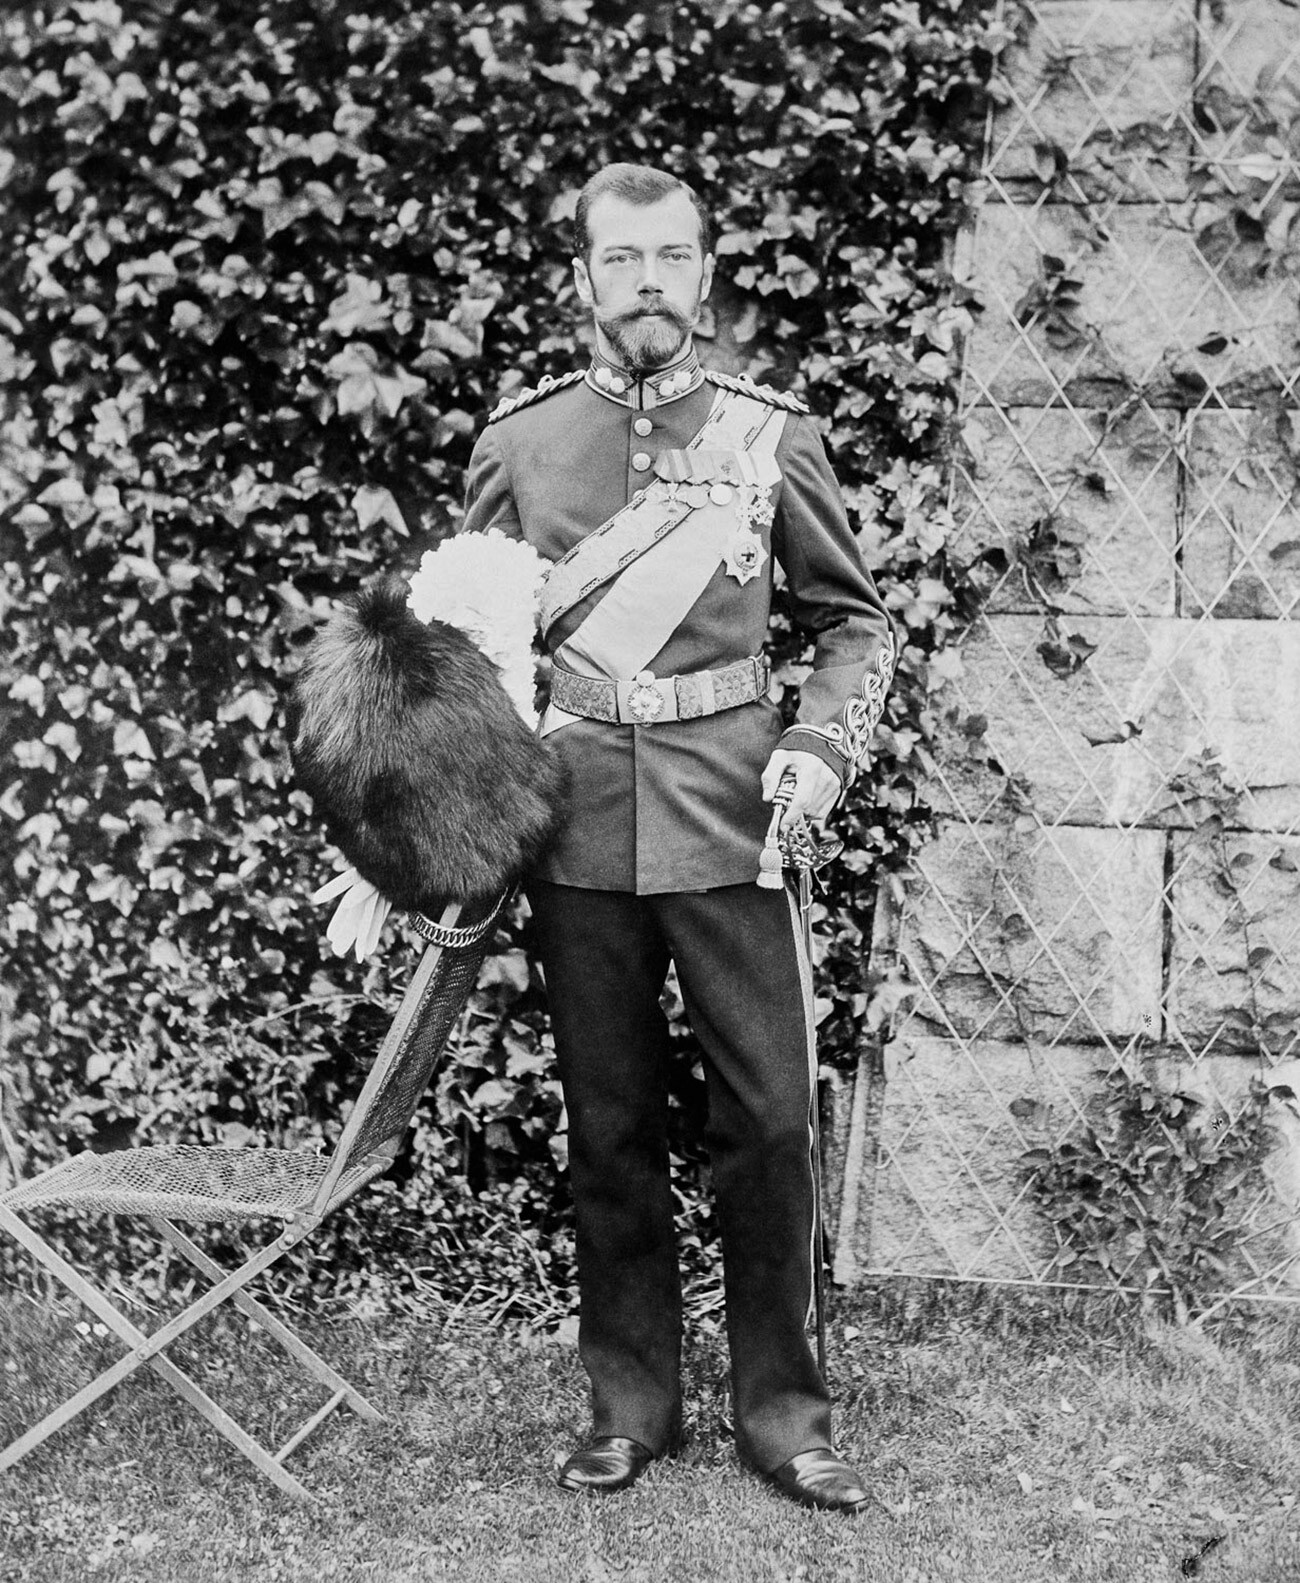 Lo zar Nicola II (1868-1918), ultimo monarca di Russia

